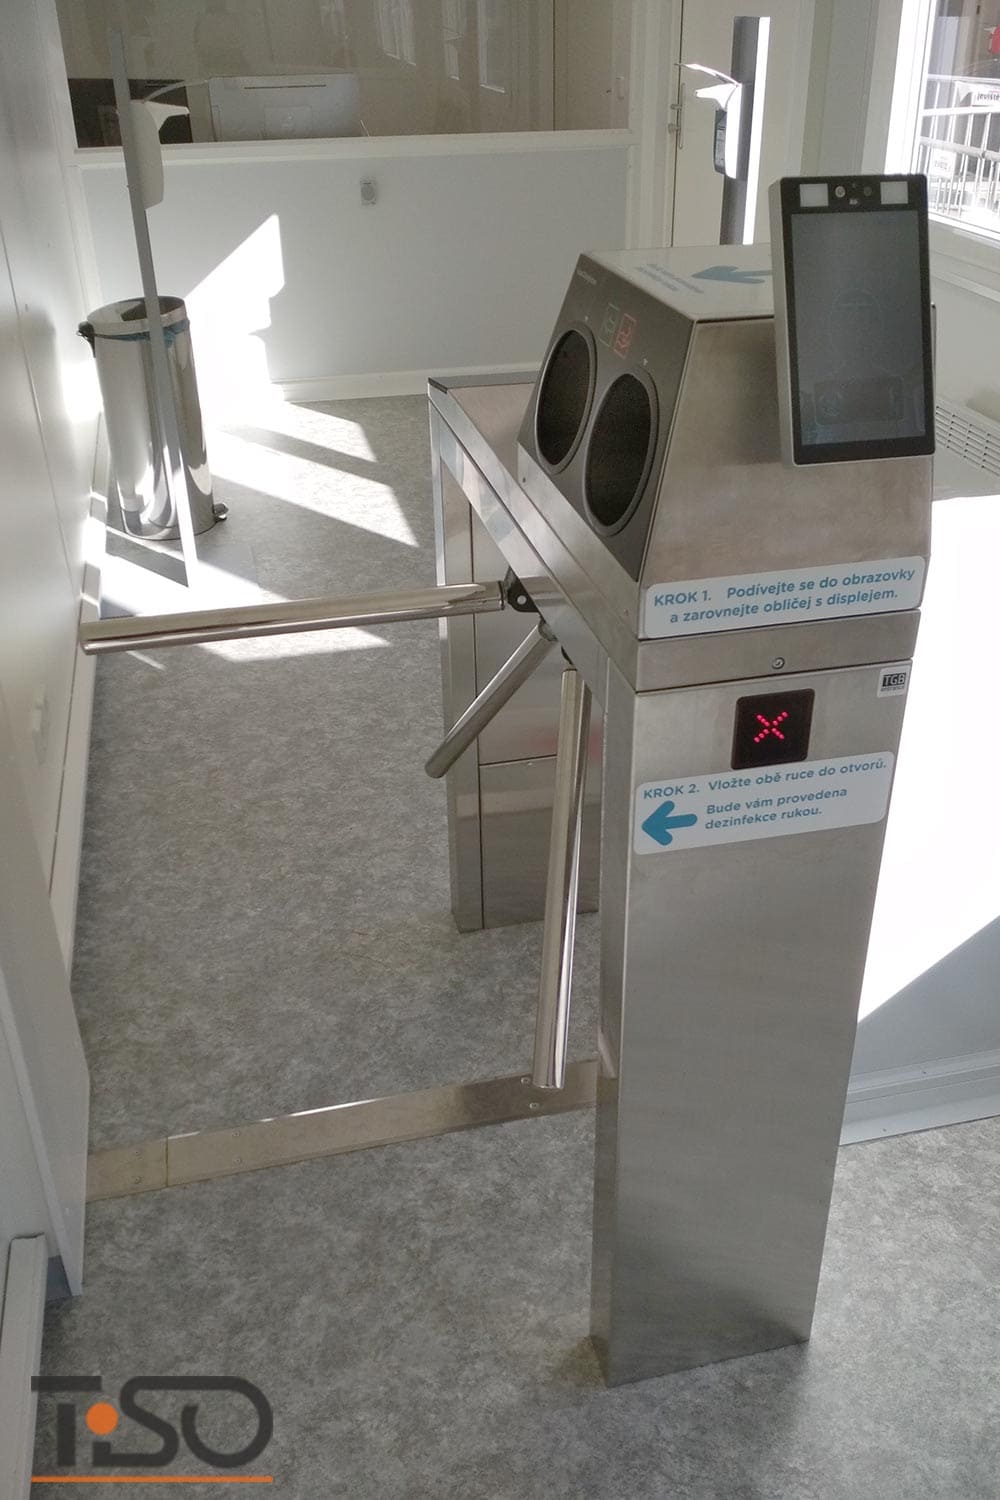 Twix-M și sistem automat de dezinfecție a mâinilor, spitalul Horovice, Cehia